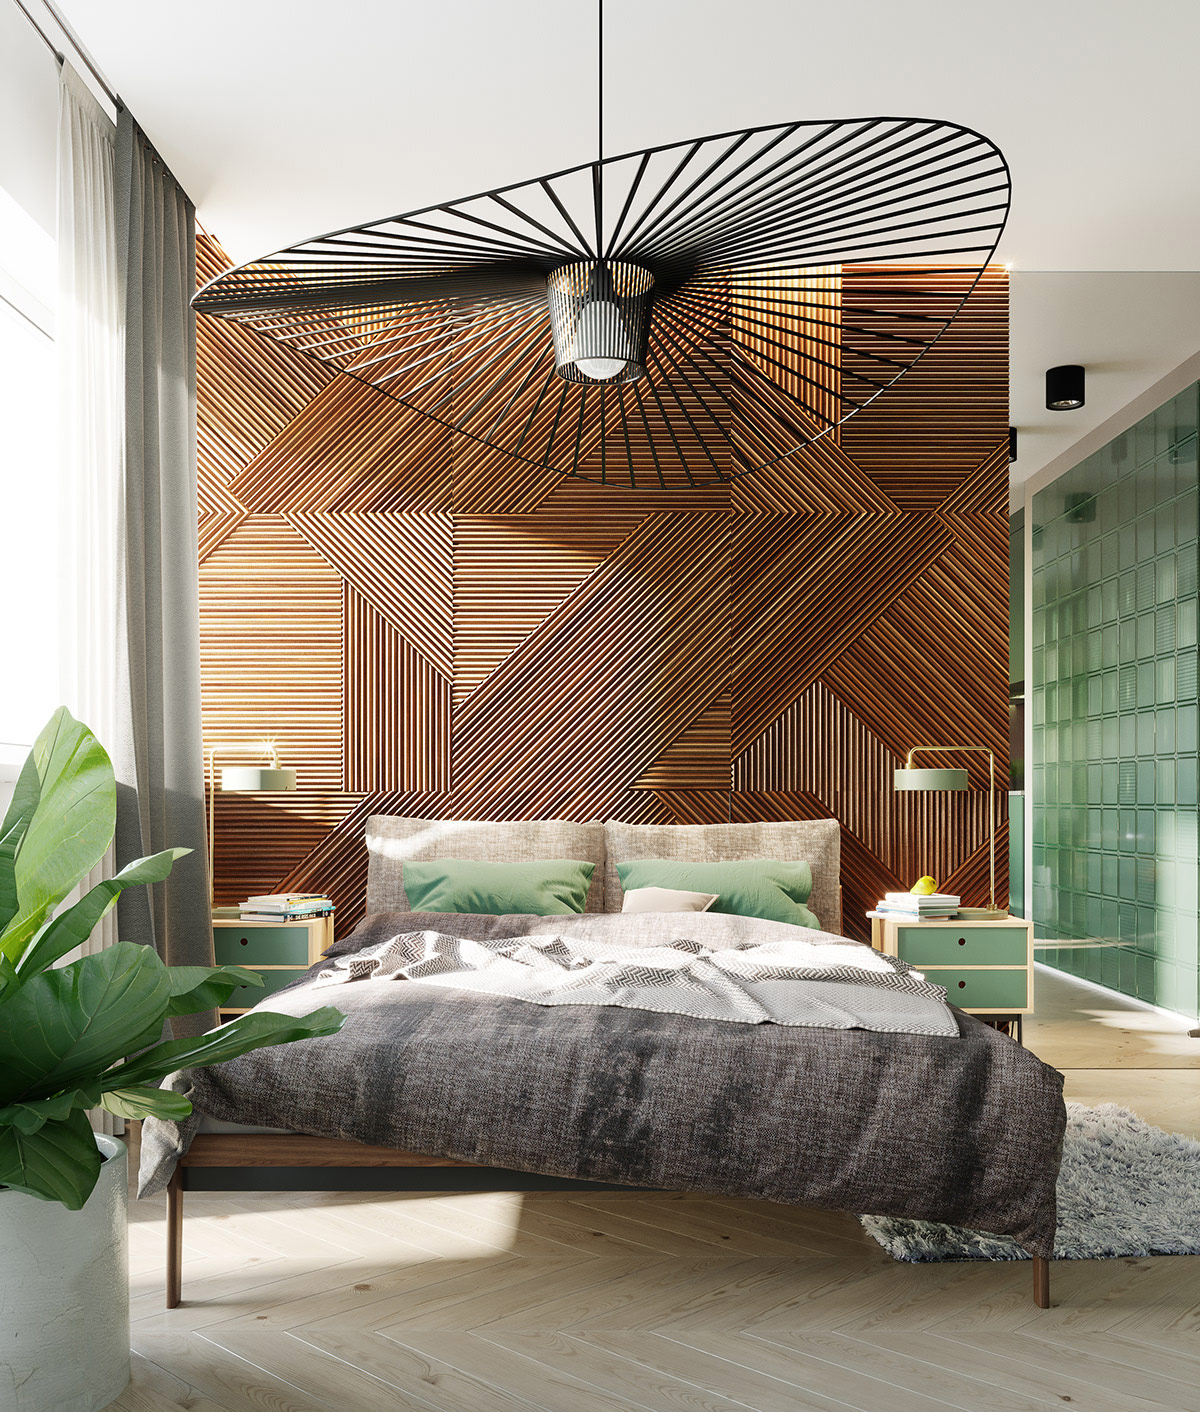 Phòng ngủ phong cách nhiệt đới kết hợp hiện đại với bức tường đầu giường ốp gỗ và những điểm nhấn màu xanh lá cây nổi bật. Những chiếc gối màu xanh lá làm sáng bộ chăn ga màu xám, trong khi đèn bàn đầu giường màu xanh lá cực bắt mắt.